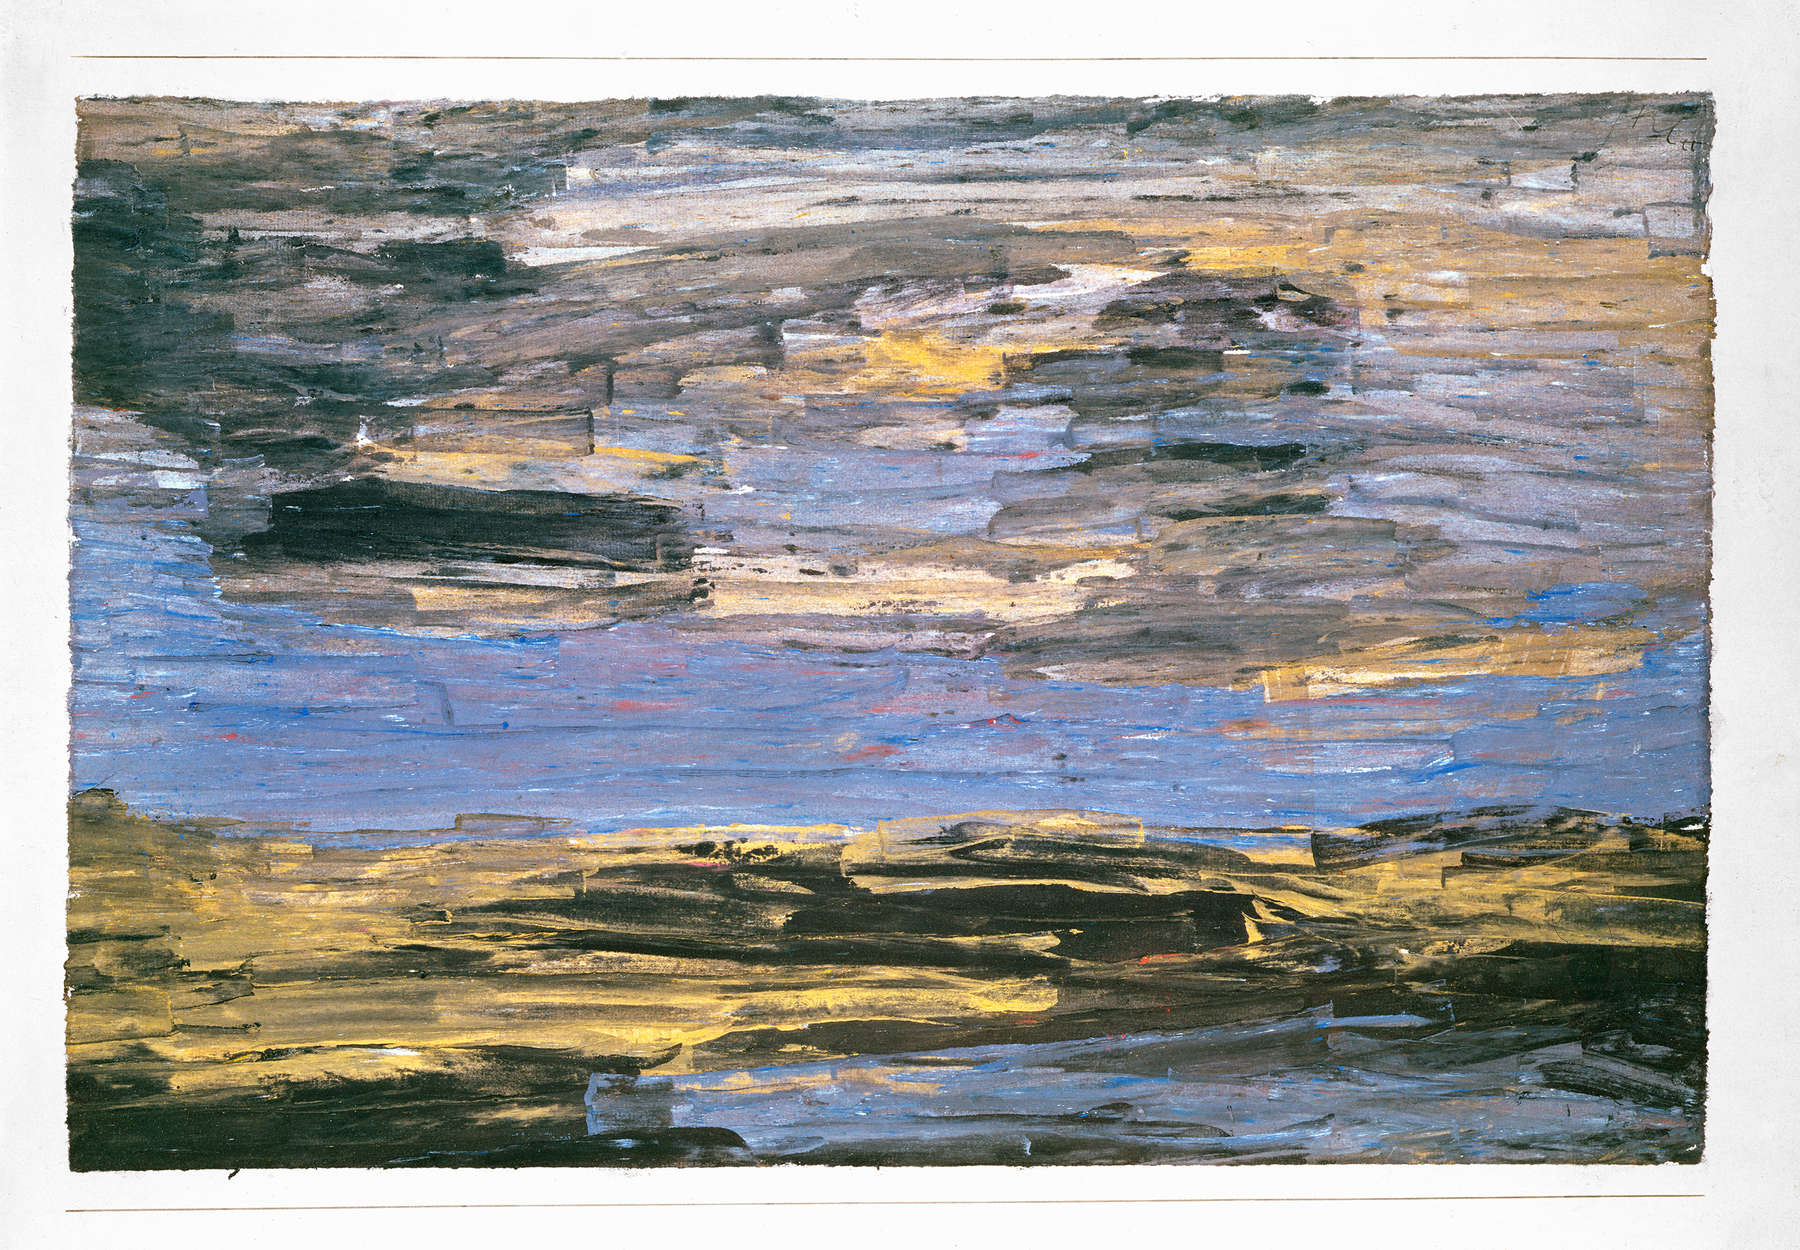             Muurschildering "Storm over de vlakte" van Paul Klee
        